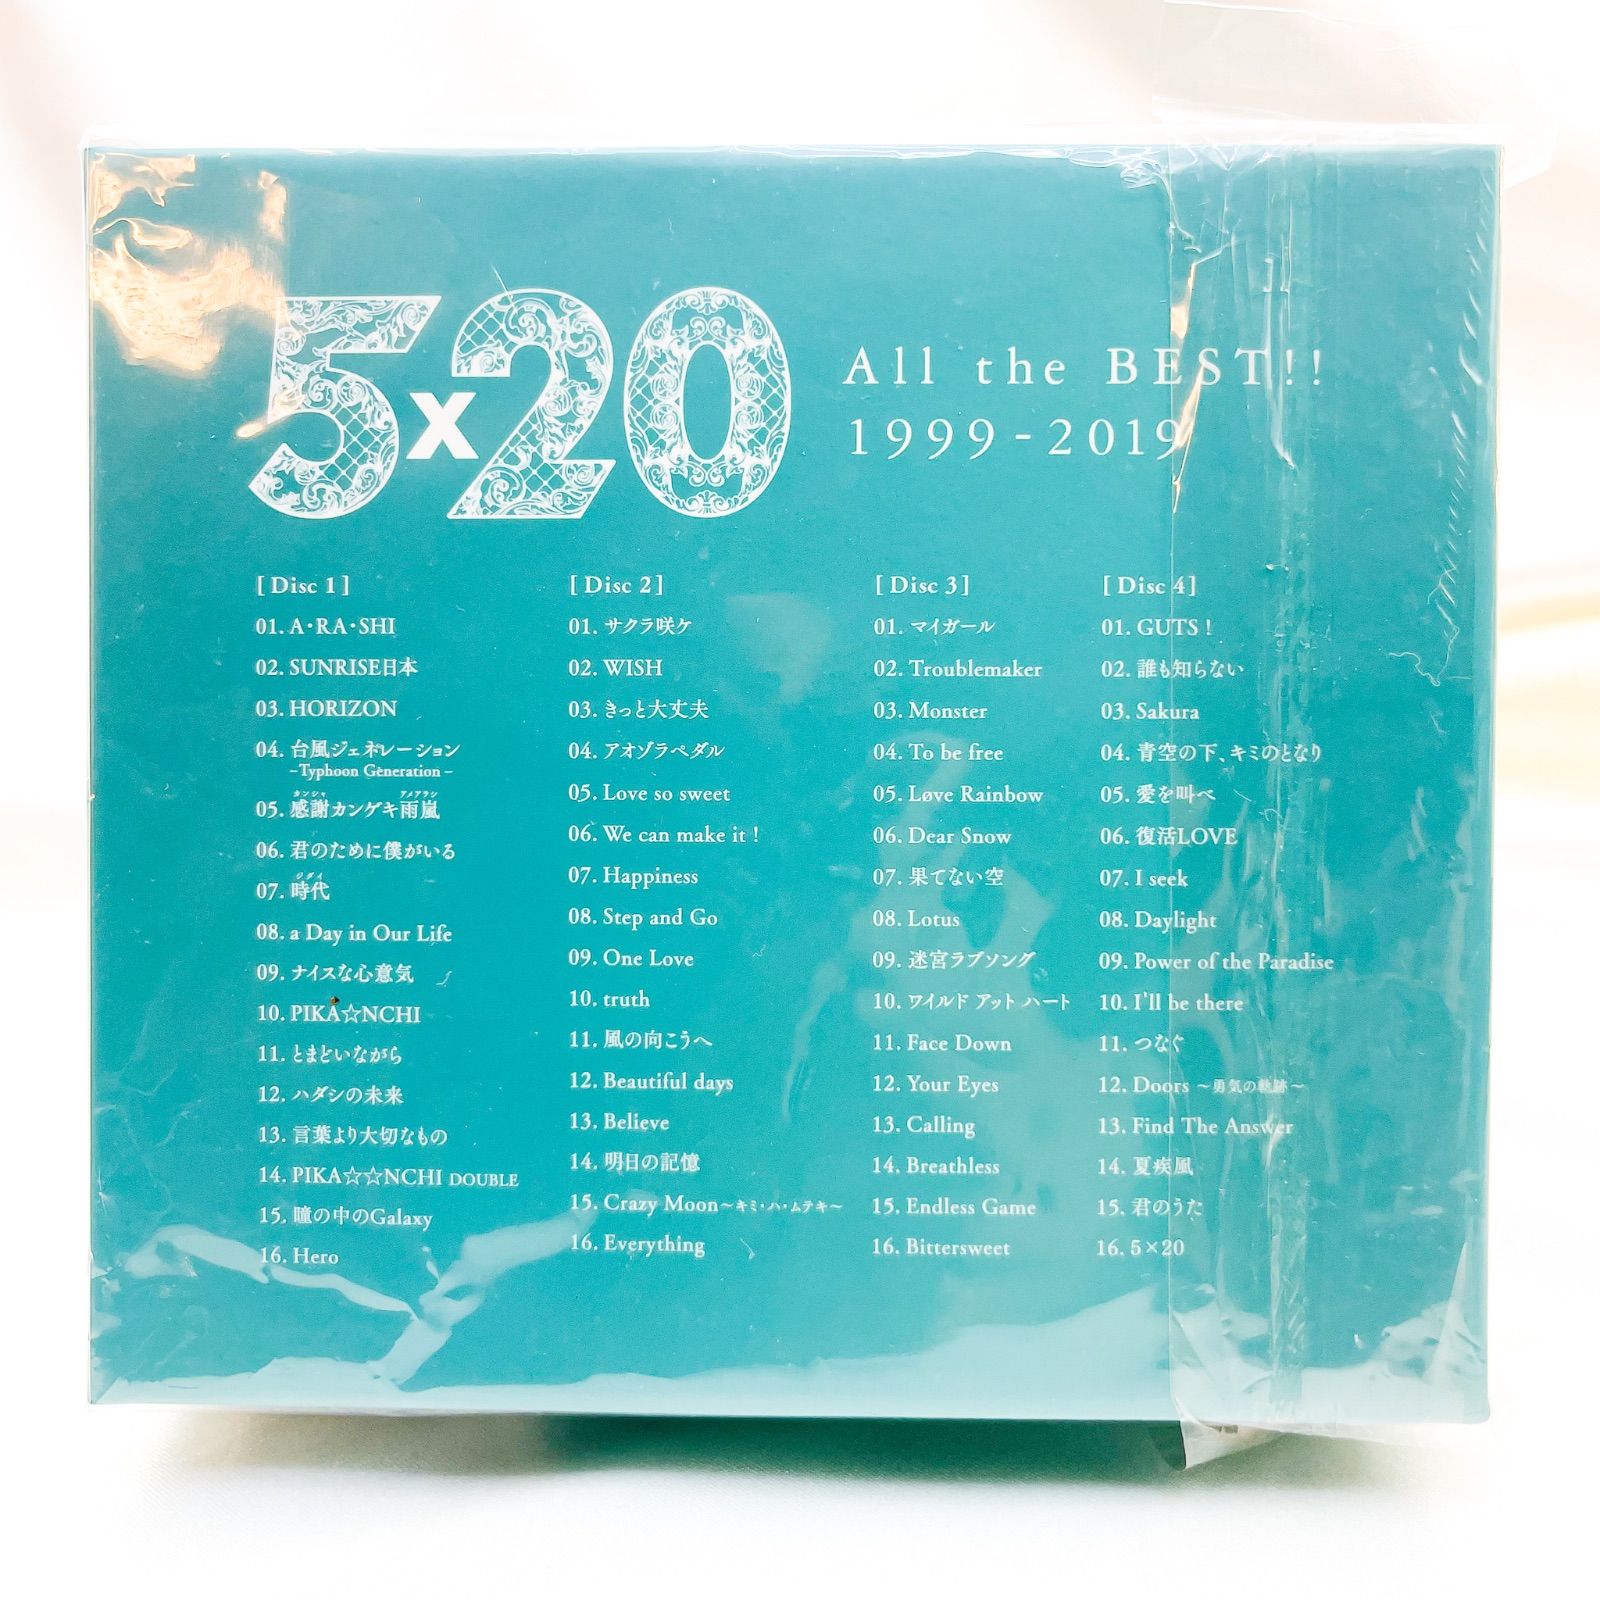 嵐 5×20 All the BEST!! 1999-2019 初回限定盤2 (A) - メルカリ